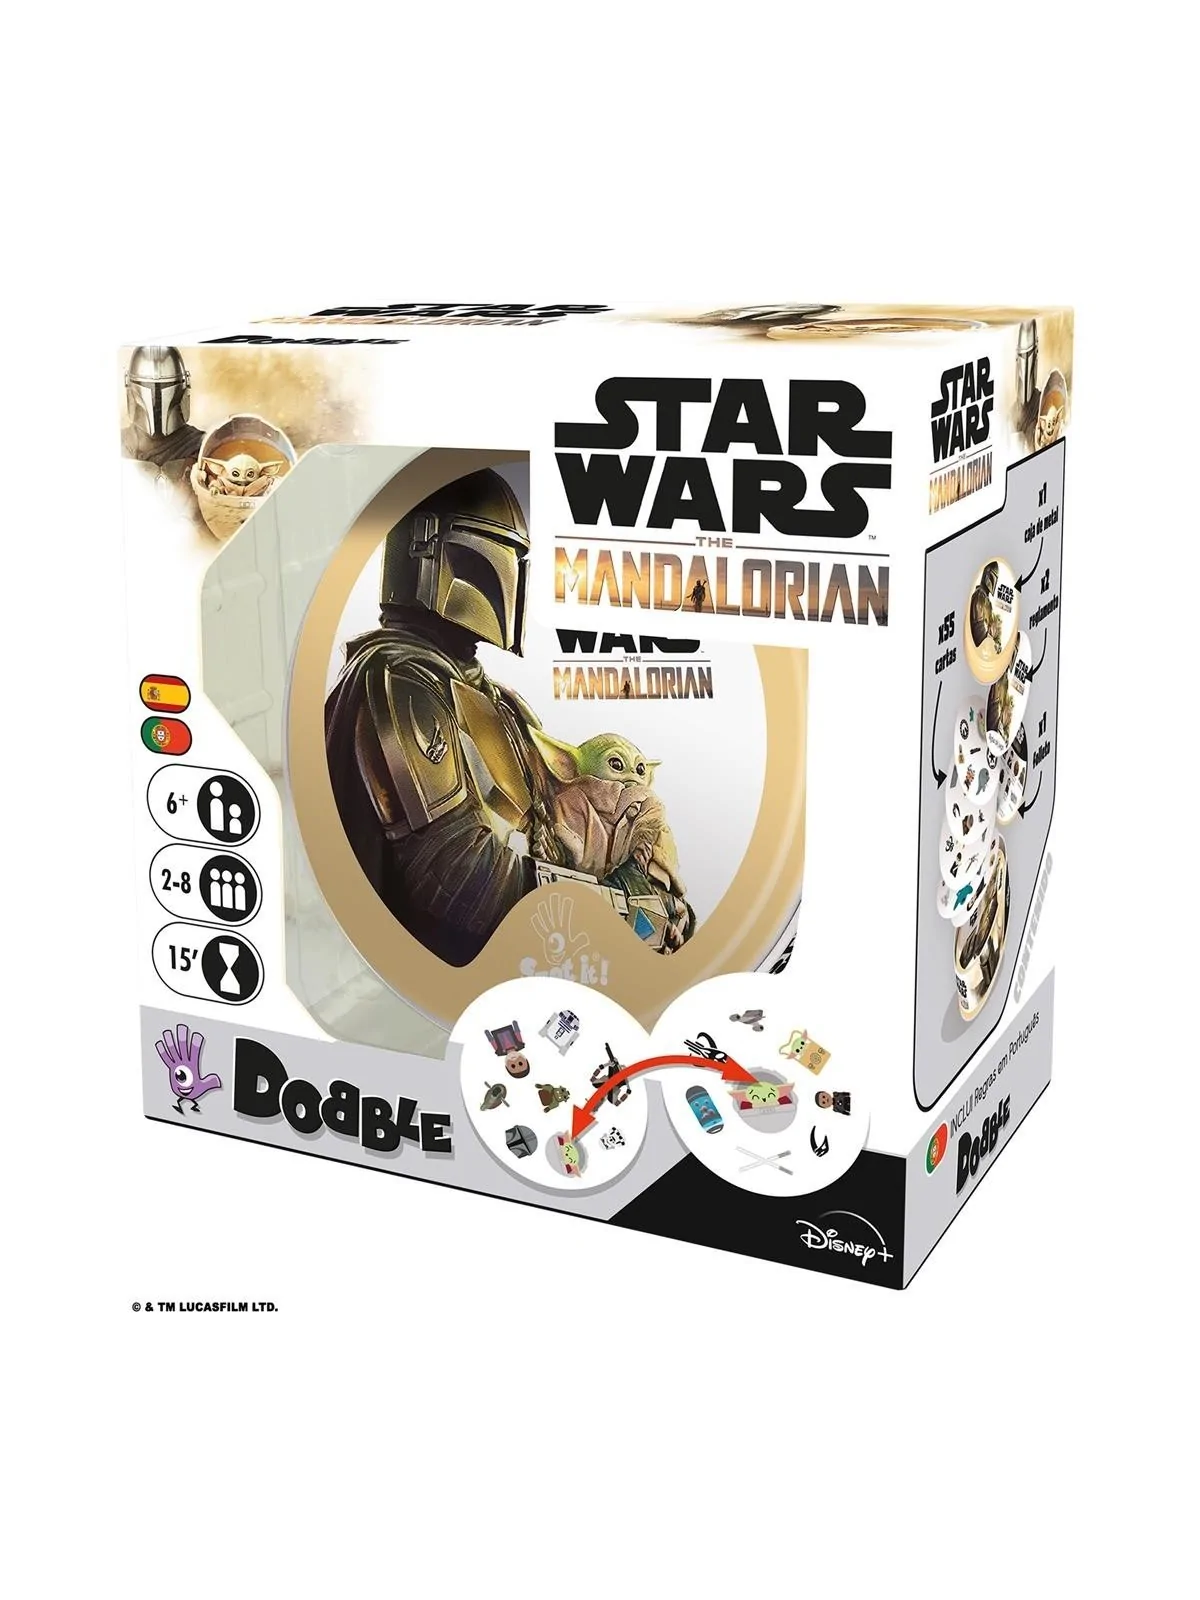 Comprar Dobble Star Wars Mandalorian barato al mejor precio 15,99 € de